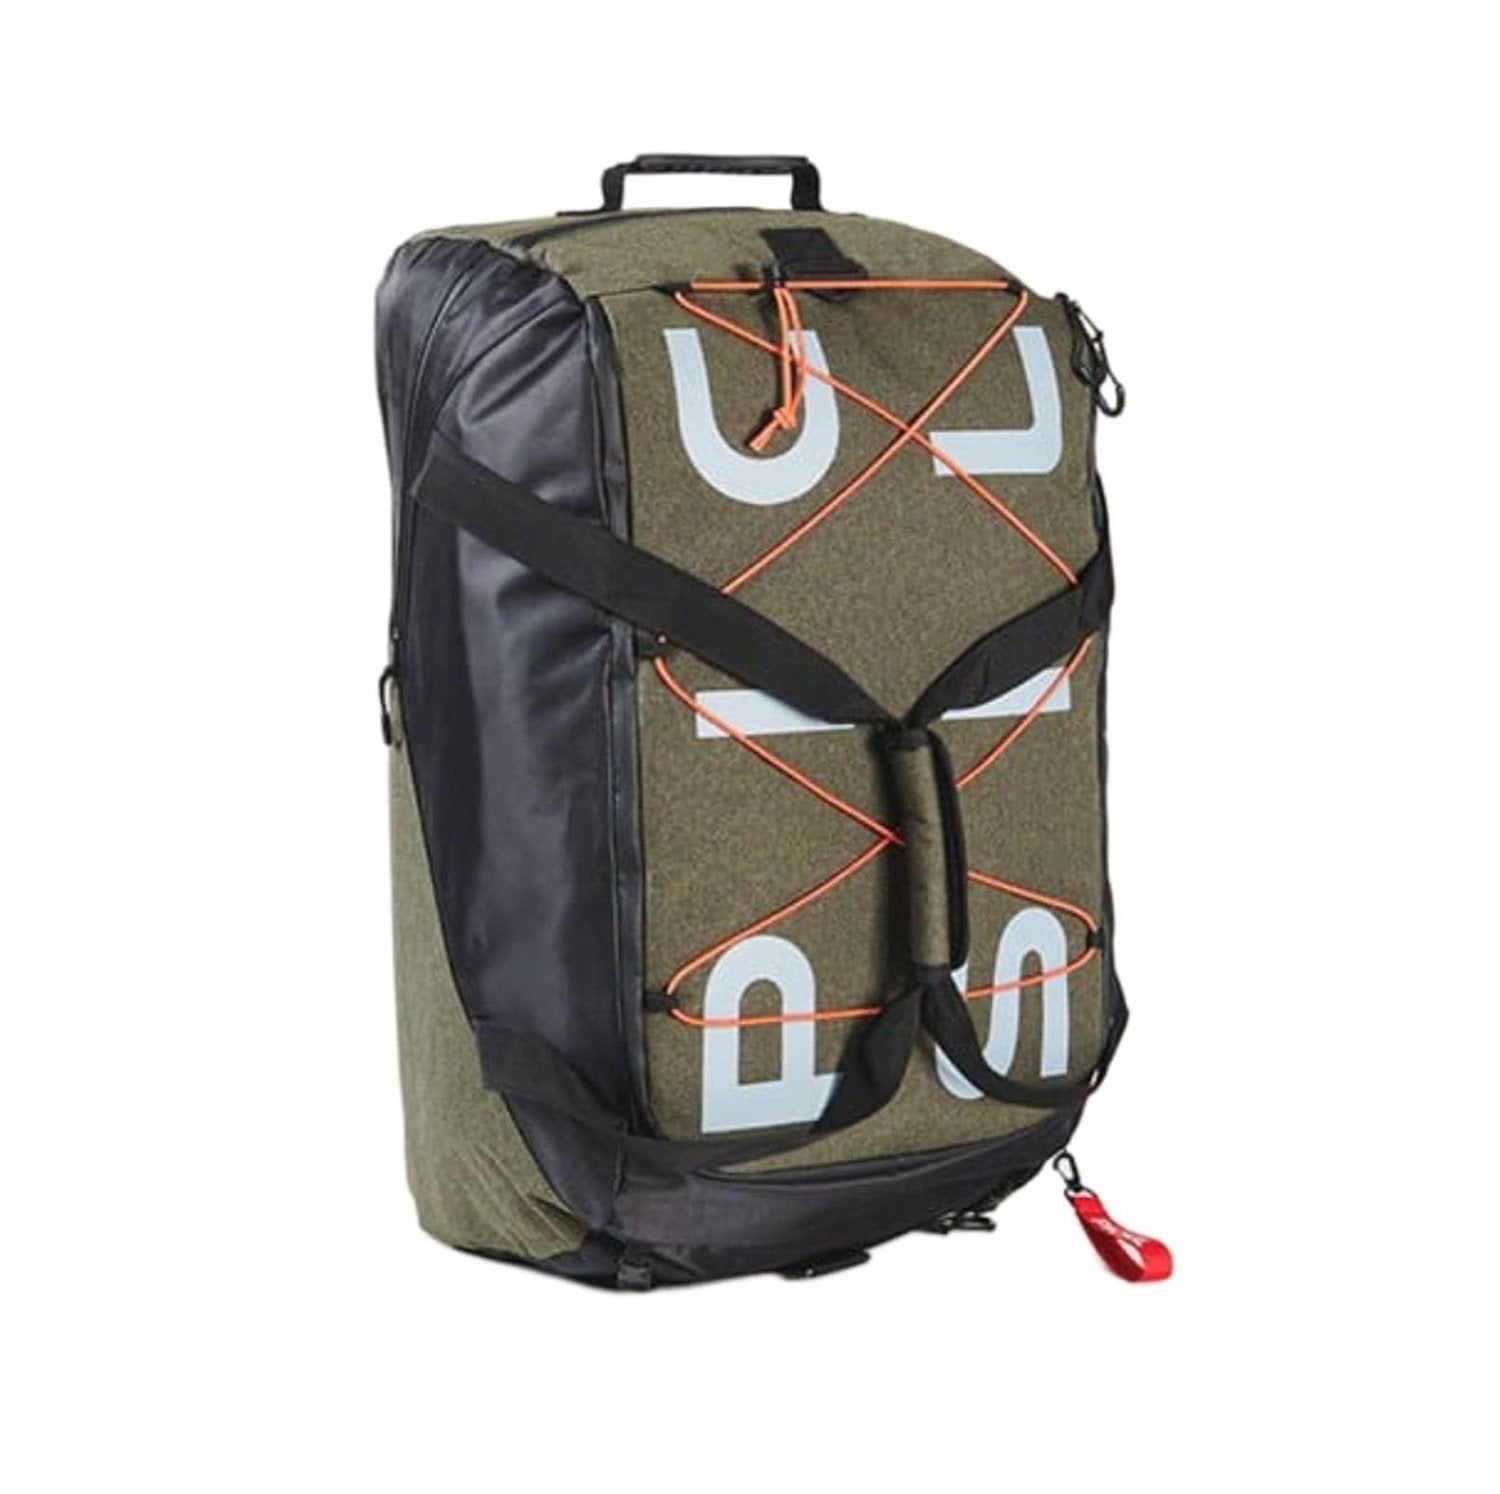 PicSil Duffle Backpack (45L) Grün kaufen bei HighPowered.ch